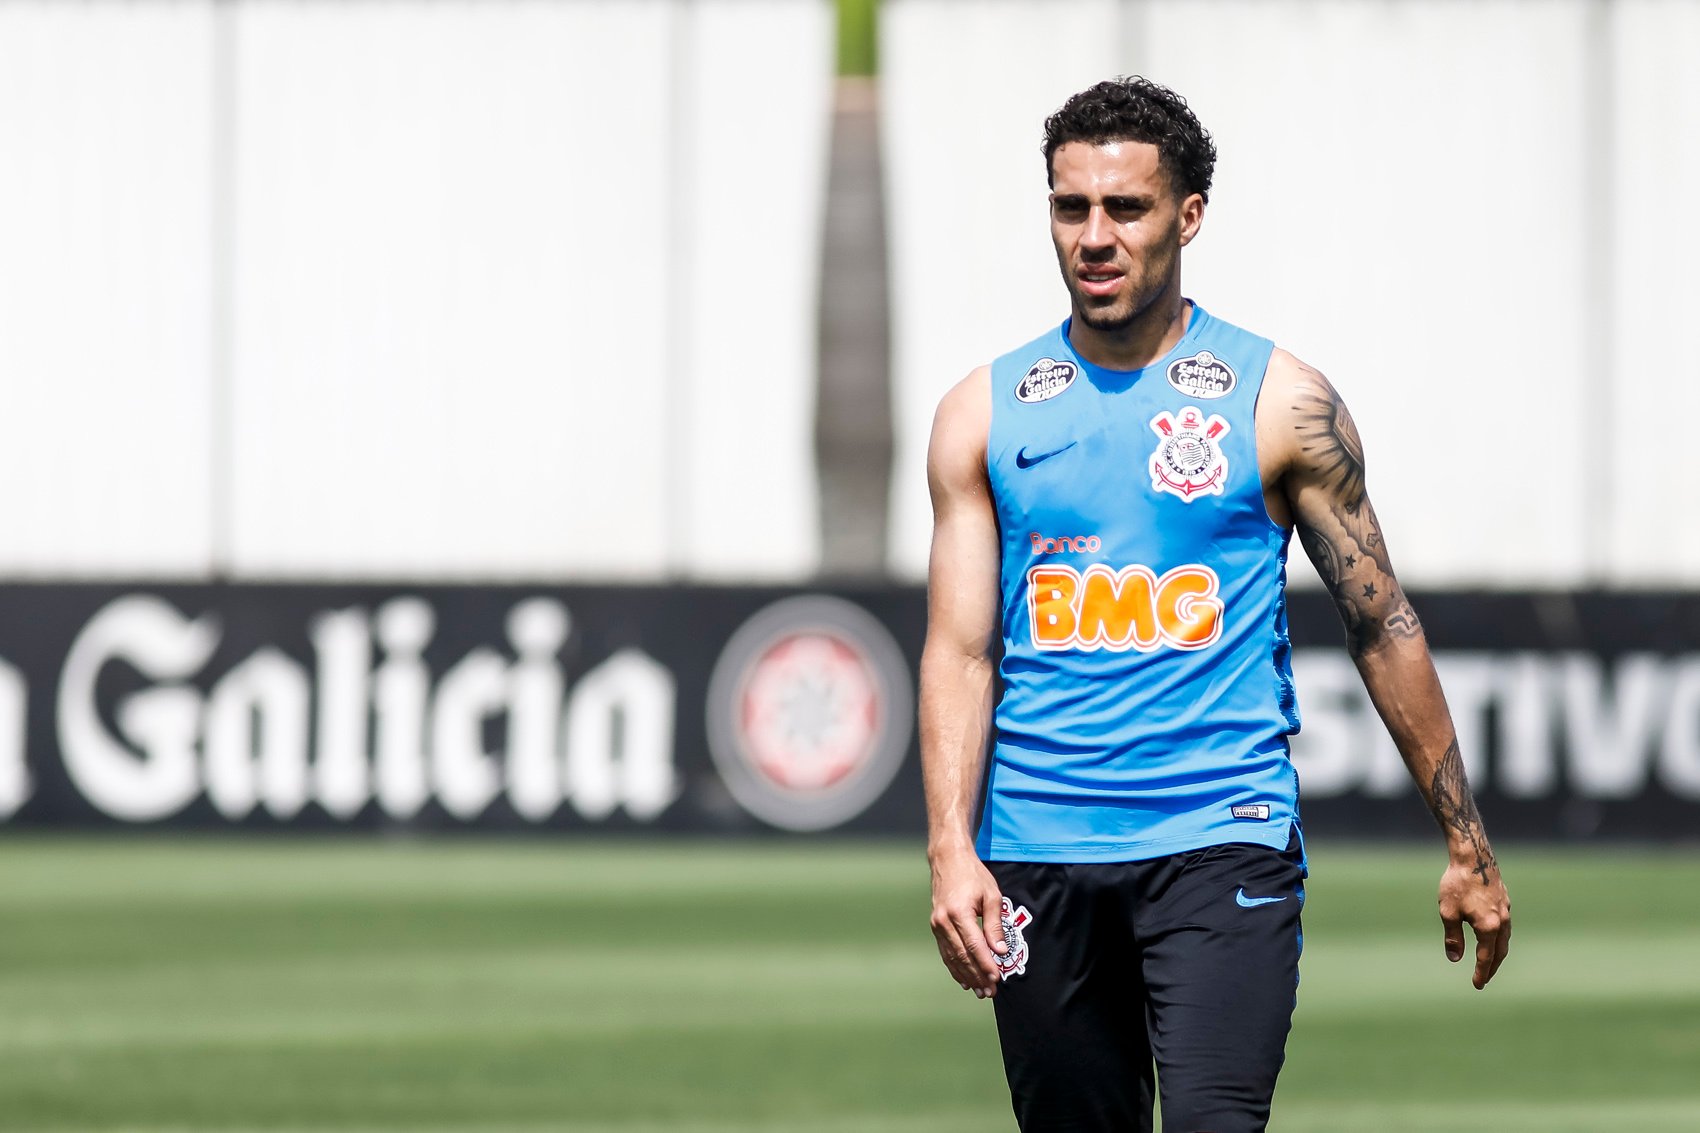 Gabriel, volante do Corinthians, foi denunciado pela comemoração de um gol marcado por Clayson contra o São Paulo, em 2017. Ele levou suas mãos em direção aos genitais e fez gestos obscenos ao público presente no estádio. Ele pegou dois jogos de suspensão.